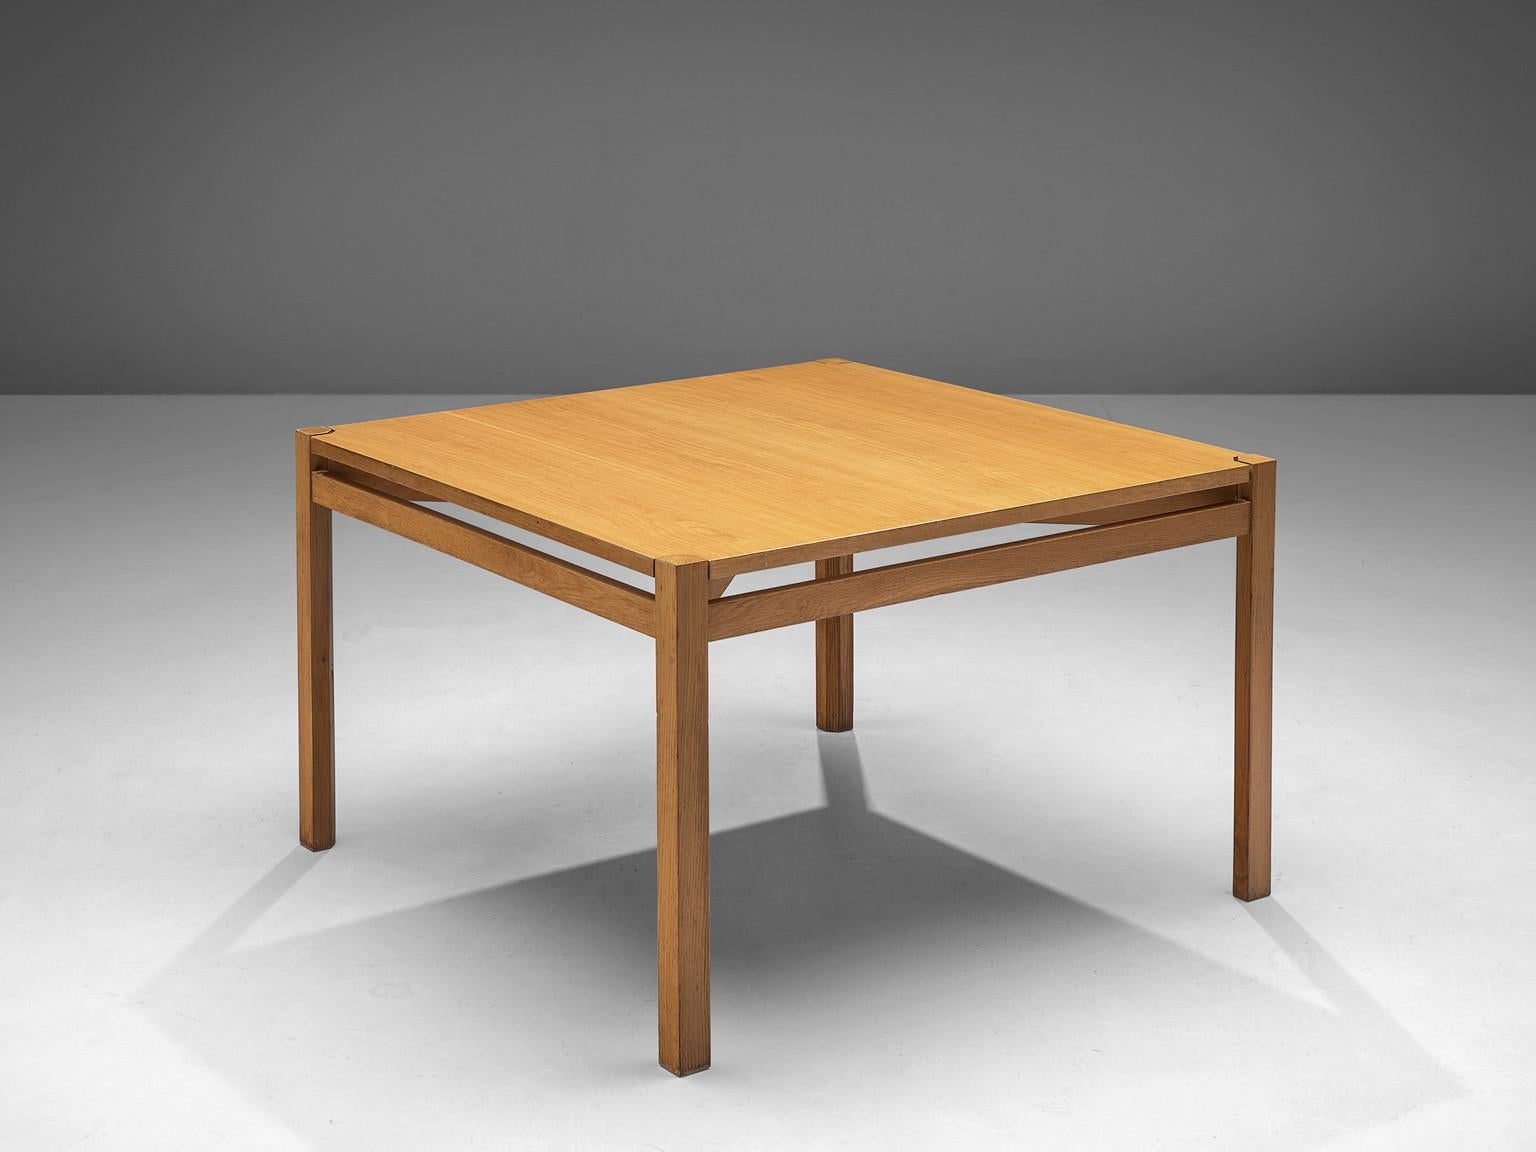 Jordi Casablanca Muntañola, Esstisch, Eiche, Spanien, 1979. 

Der katalanische Designer Jordi Casablanca Muntañola (1940-2001) entwarf diesen Tisch im Jahr 1979. Der Esstisch hat eine quadratische Tischplatte, die auf vier eckigen Beinen steht, die